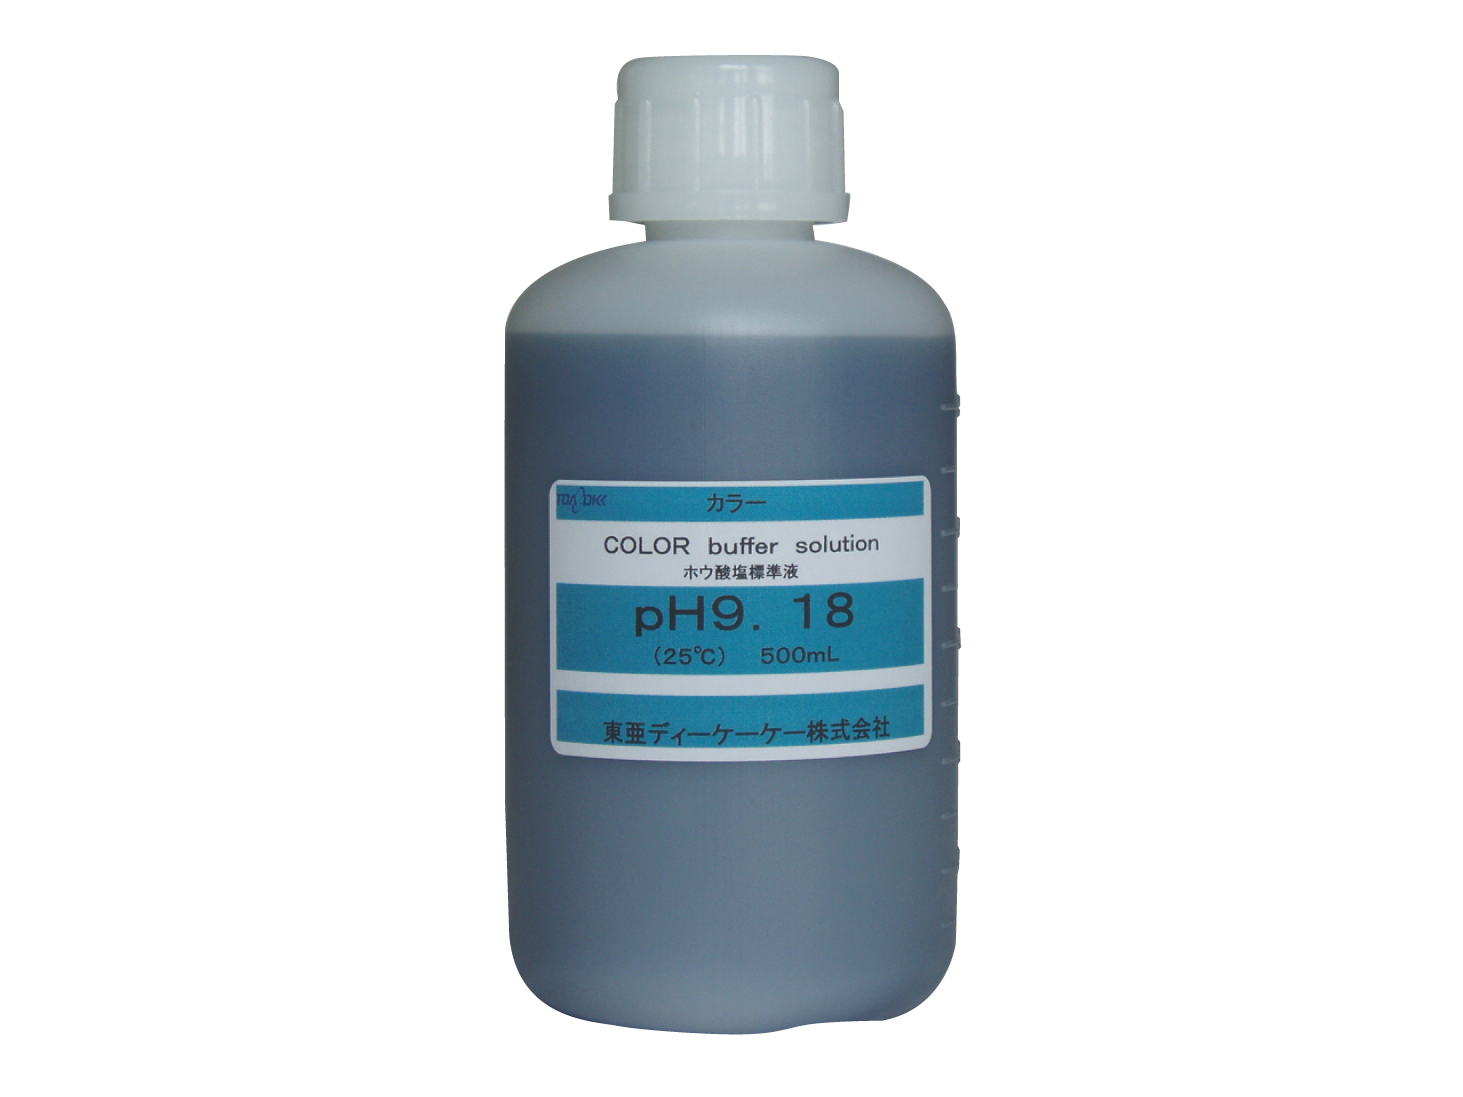 カラーpH標準液 pH9.18CL ほう酸塩標準 500mL